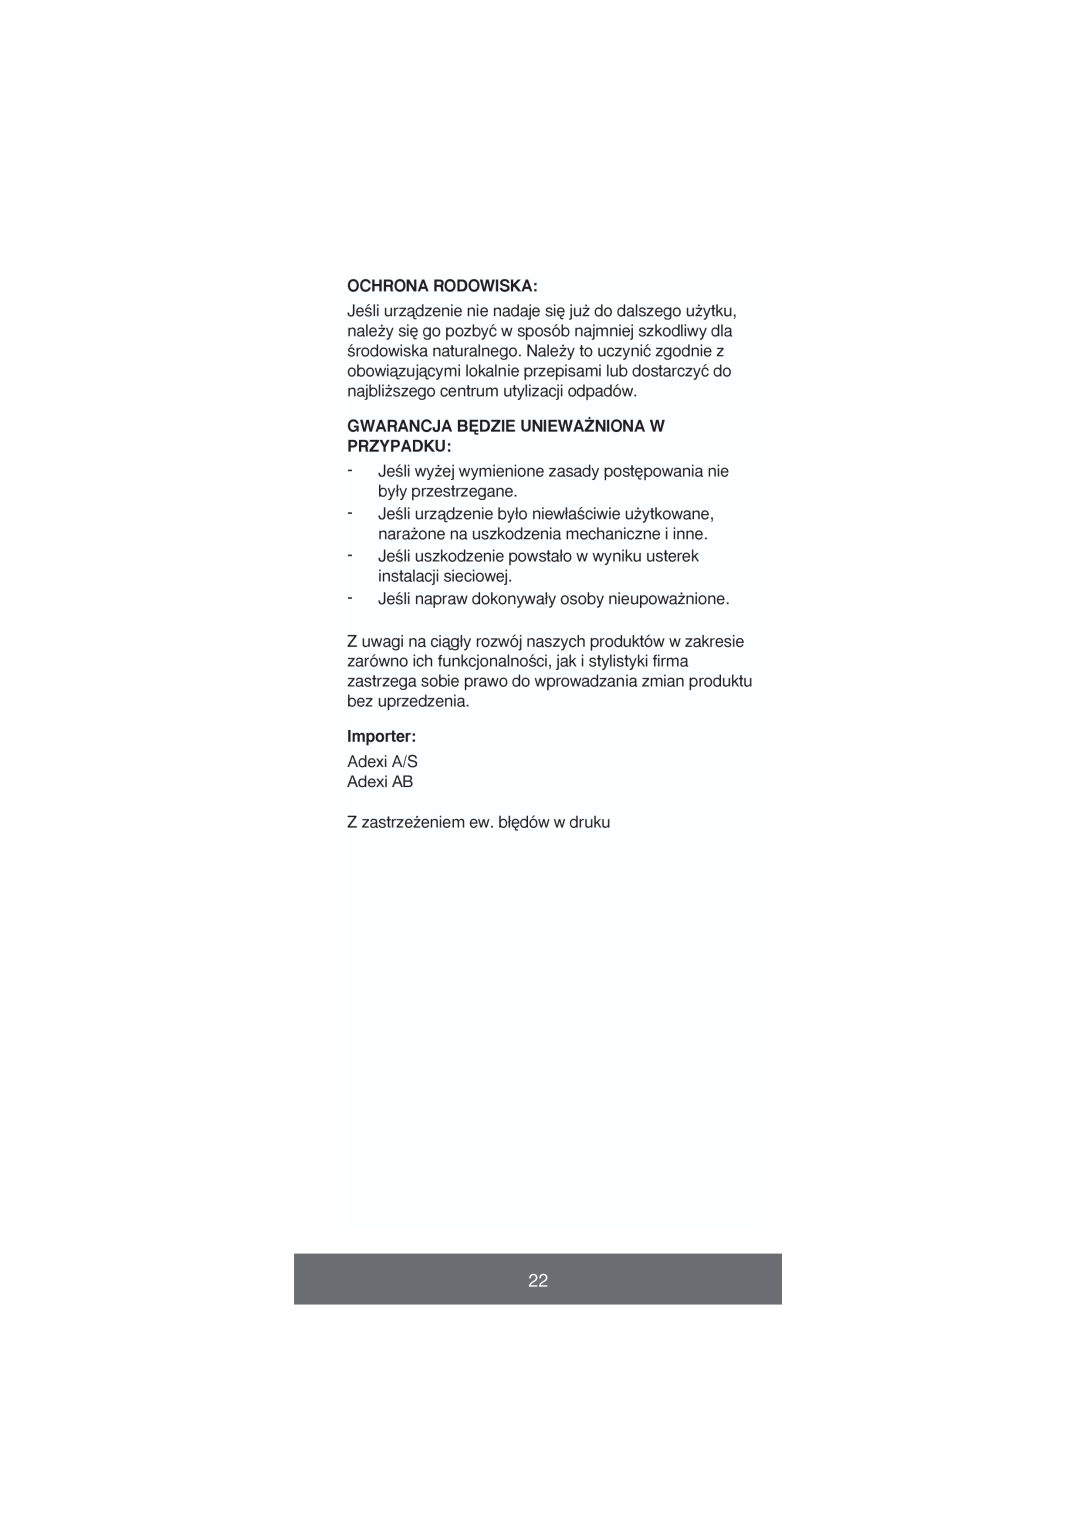 Melissa 646-035 manual Ochrona Rodowiska, Gwarancja B¢Dzie Uniewa˚Niona W Przypadku, Importer 